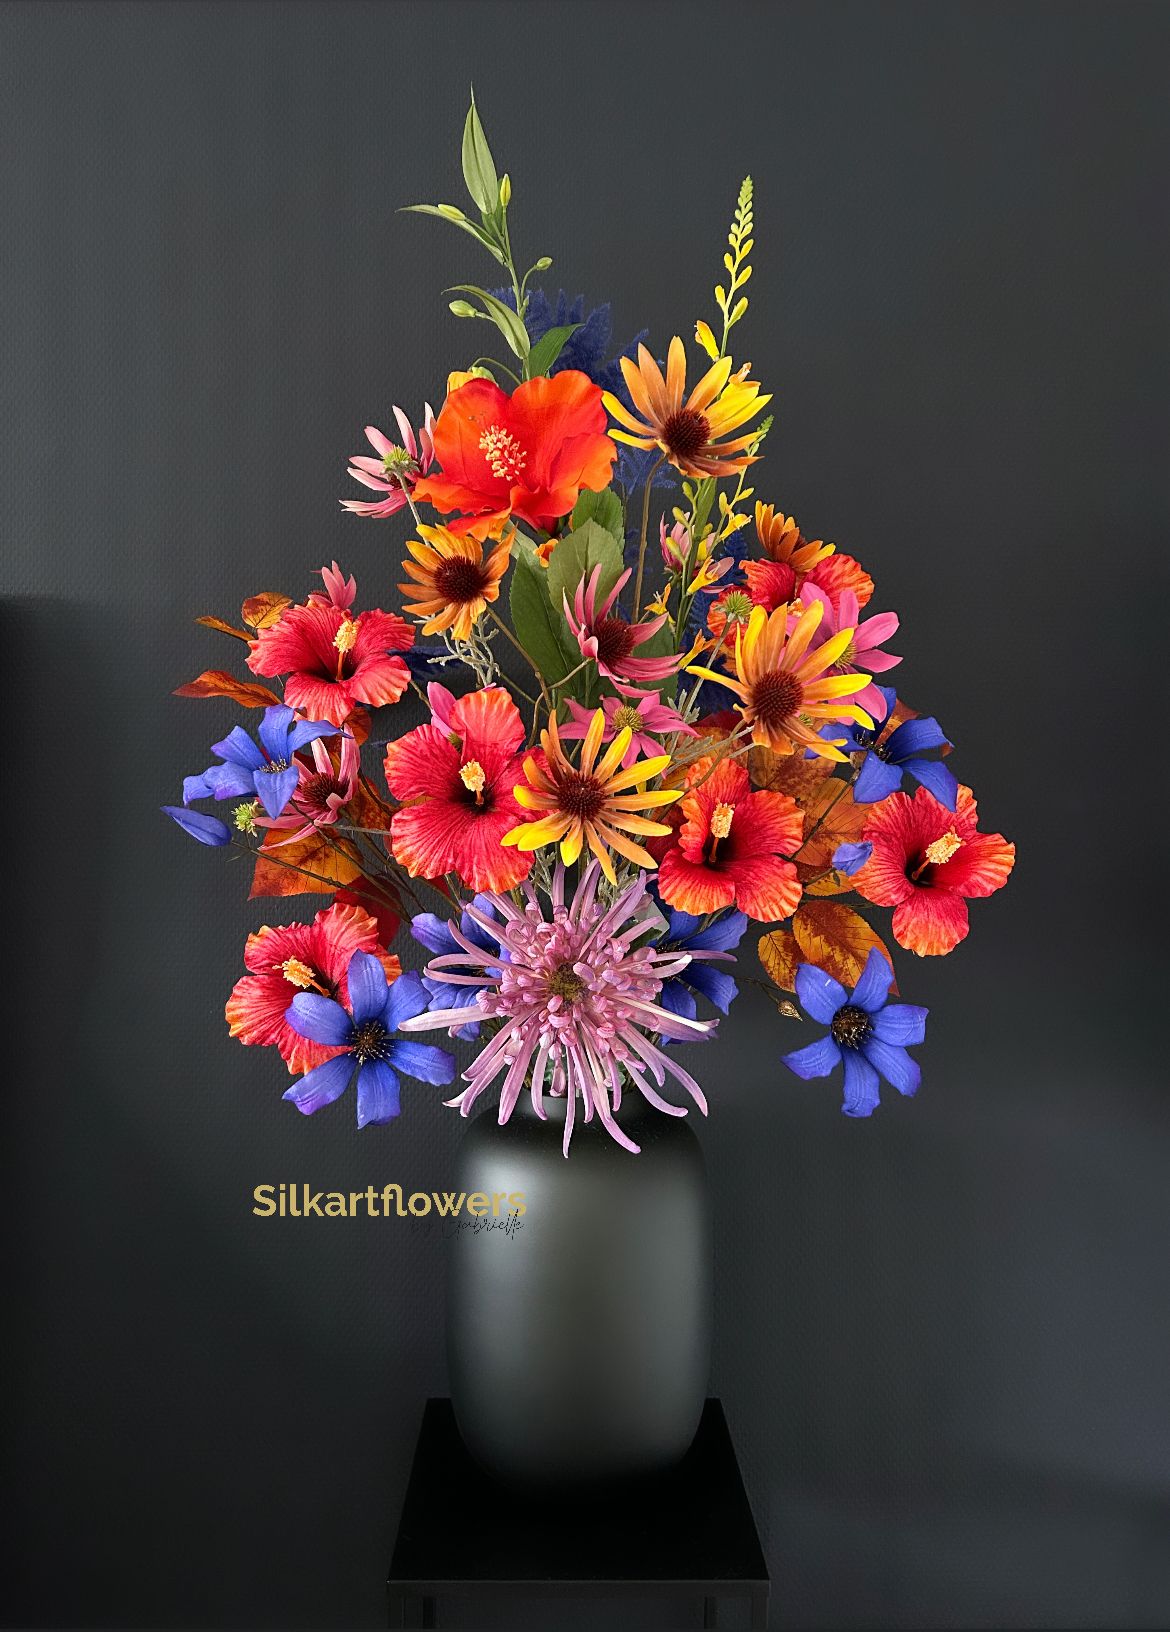 Stel zelf je boeket samen - Silkartflowers.com